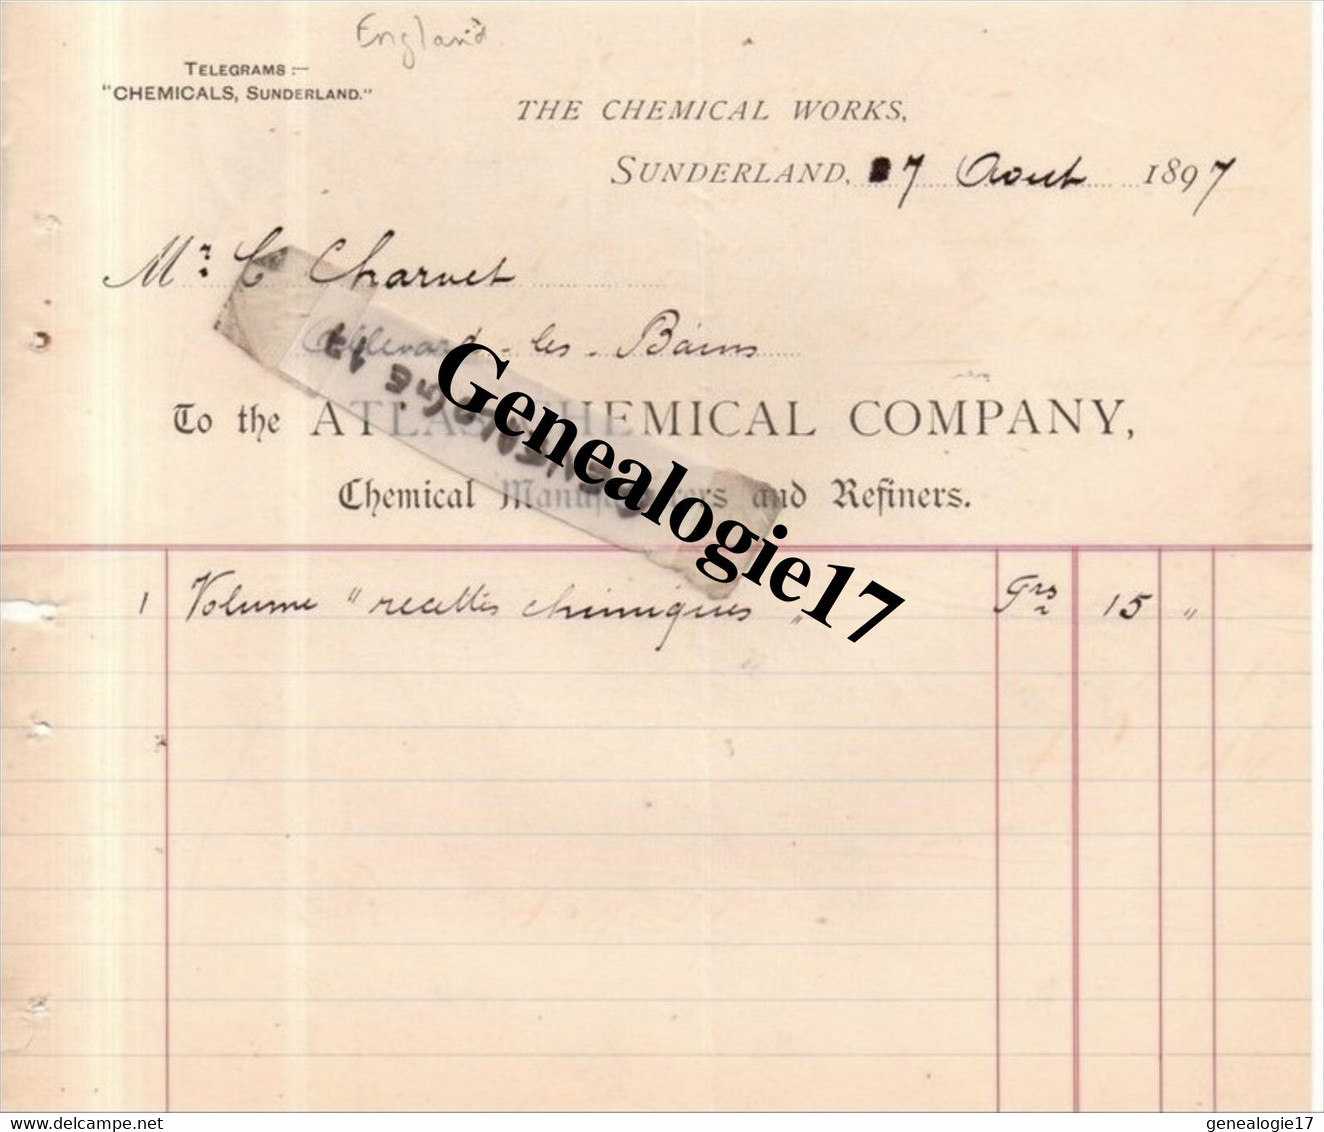 96 0491 ROYAUME UNI ANGLETERRE SUNDERLAND 1897 THE CHEMICAL WORKS - ATLAS CHEMICAL COMPANY - Royaume-Uni